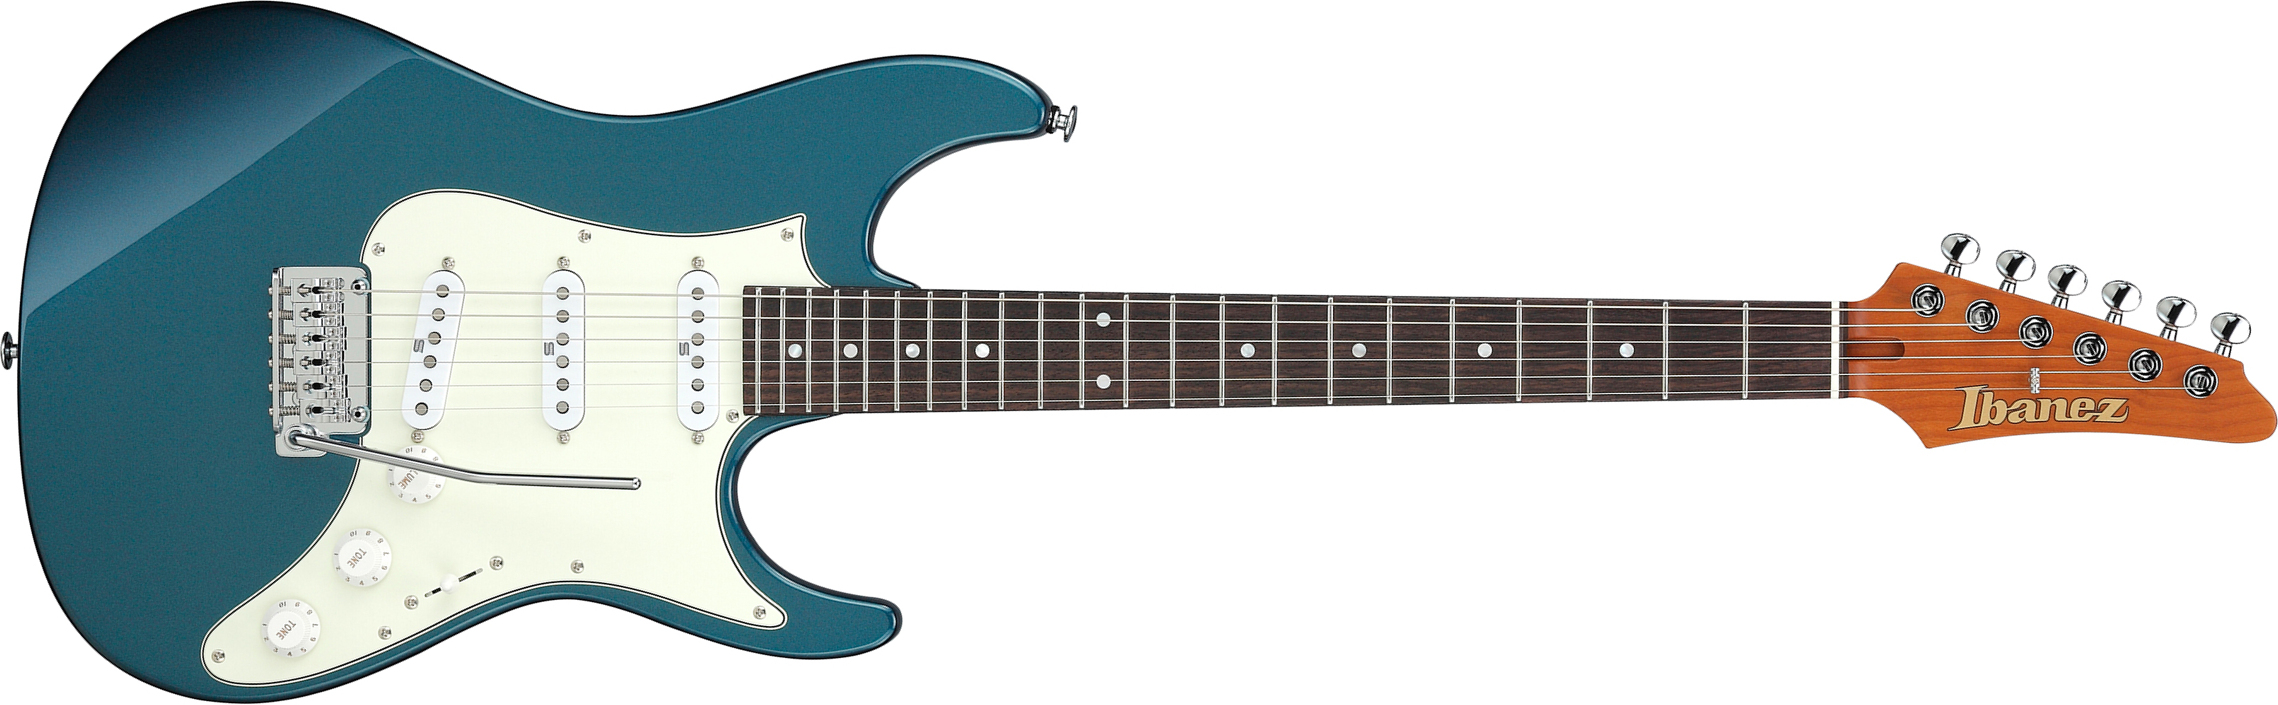 Ibanez Az2203n Atq Prestige Jap 3s Seymour Duncan Trem Rw - Antique Turquoise - E-Gitarre in Str-Form - Main picture